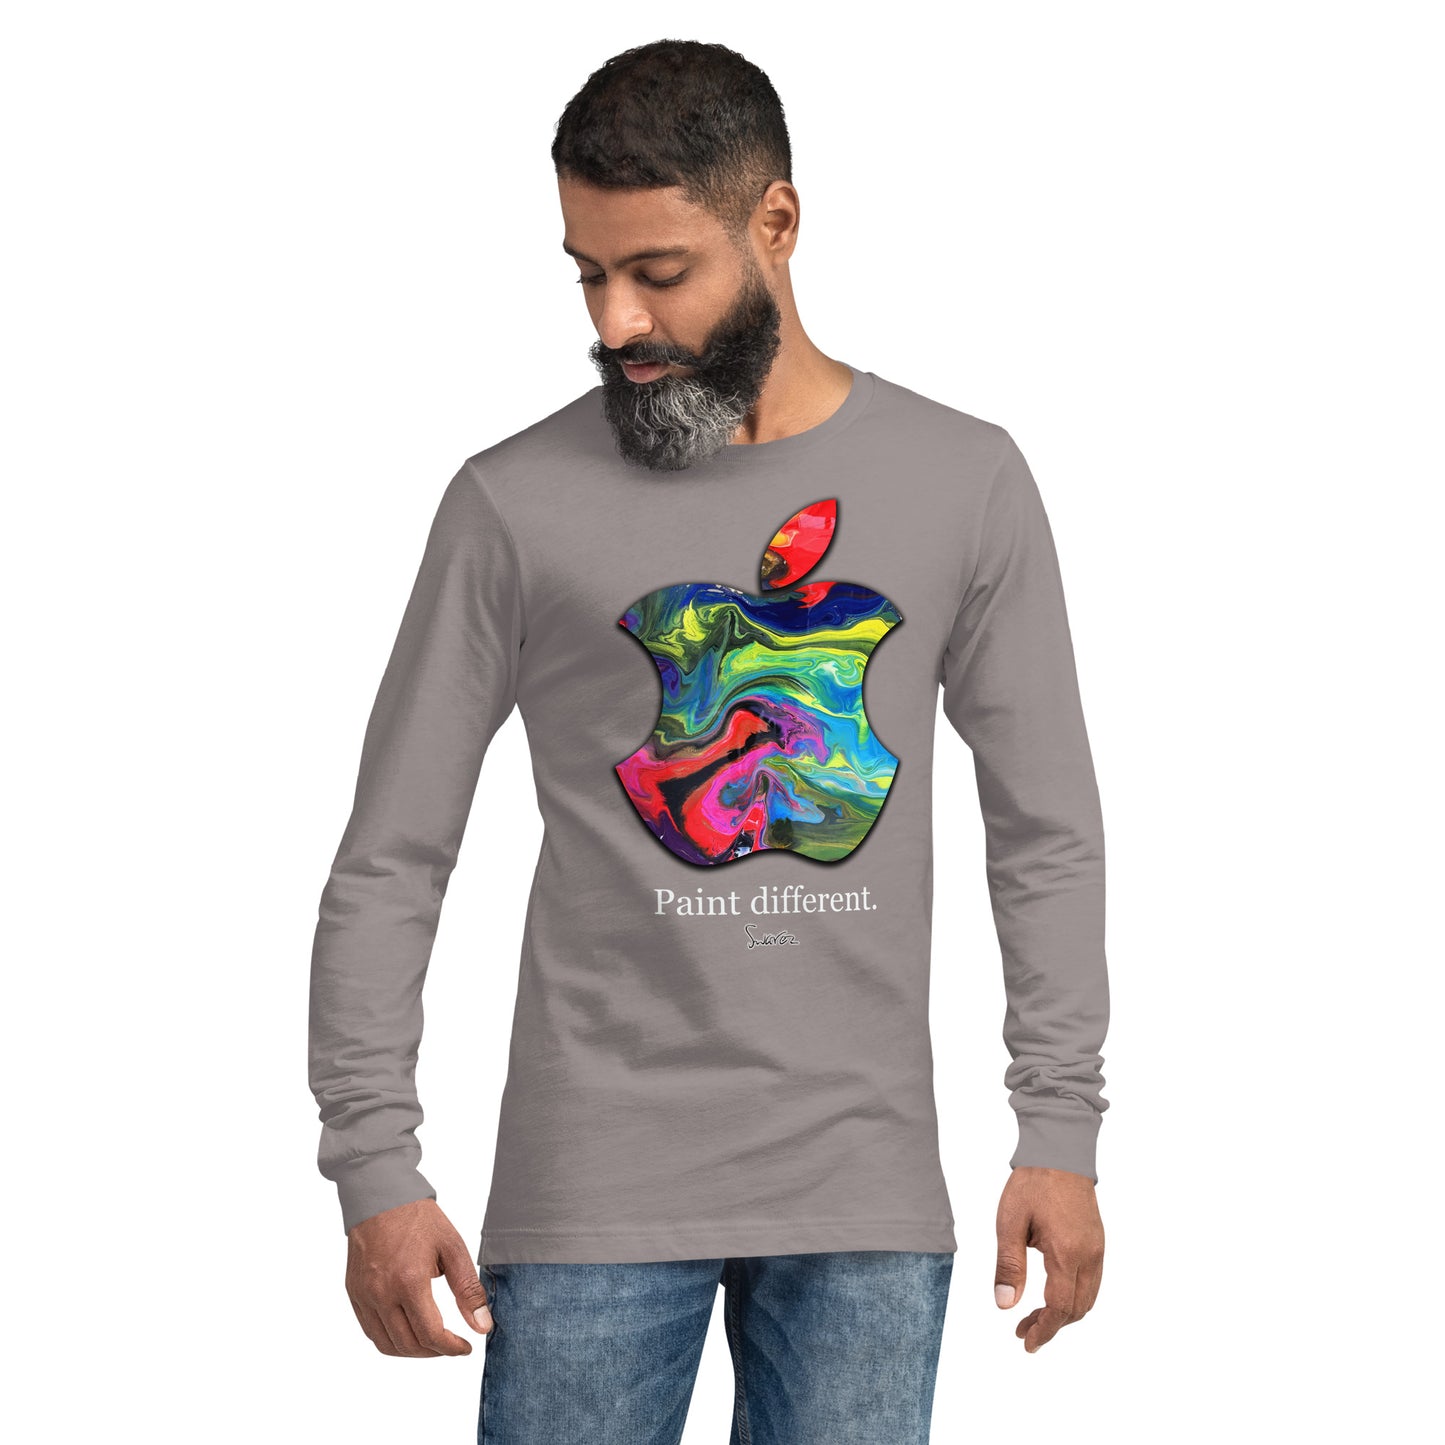 Unisex Langarm-T-Shirt – Malen Sie ein anderes Design